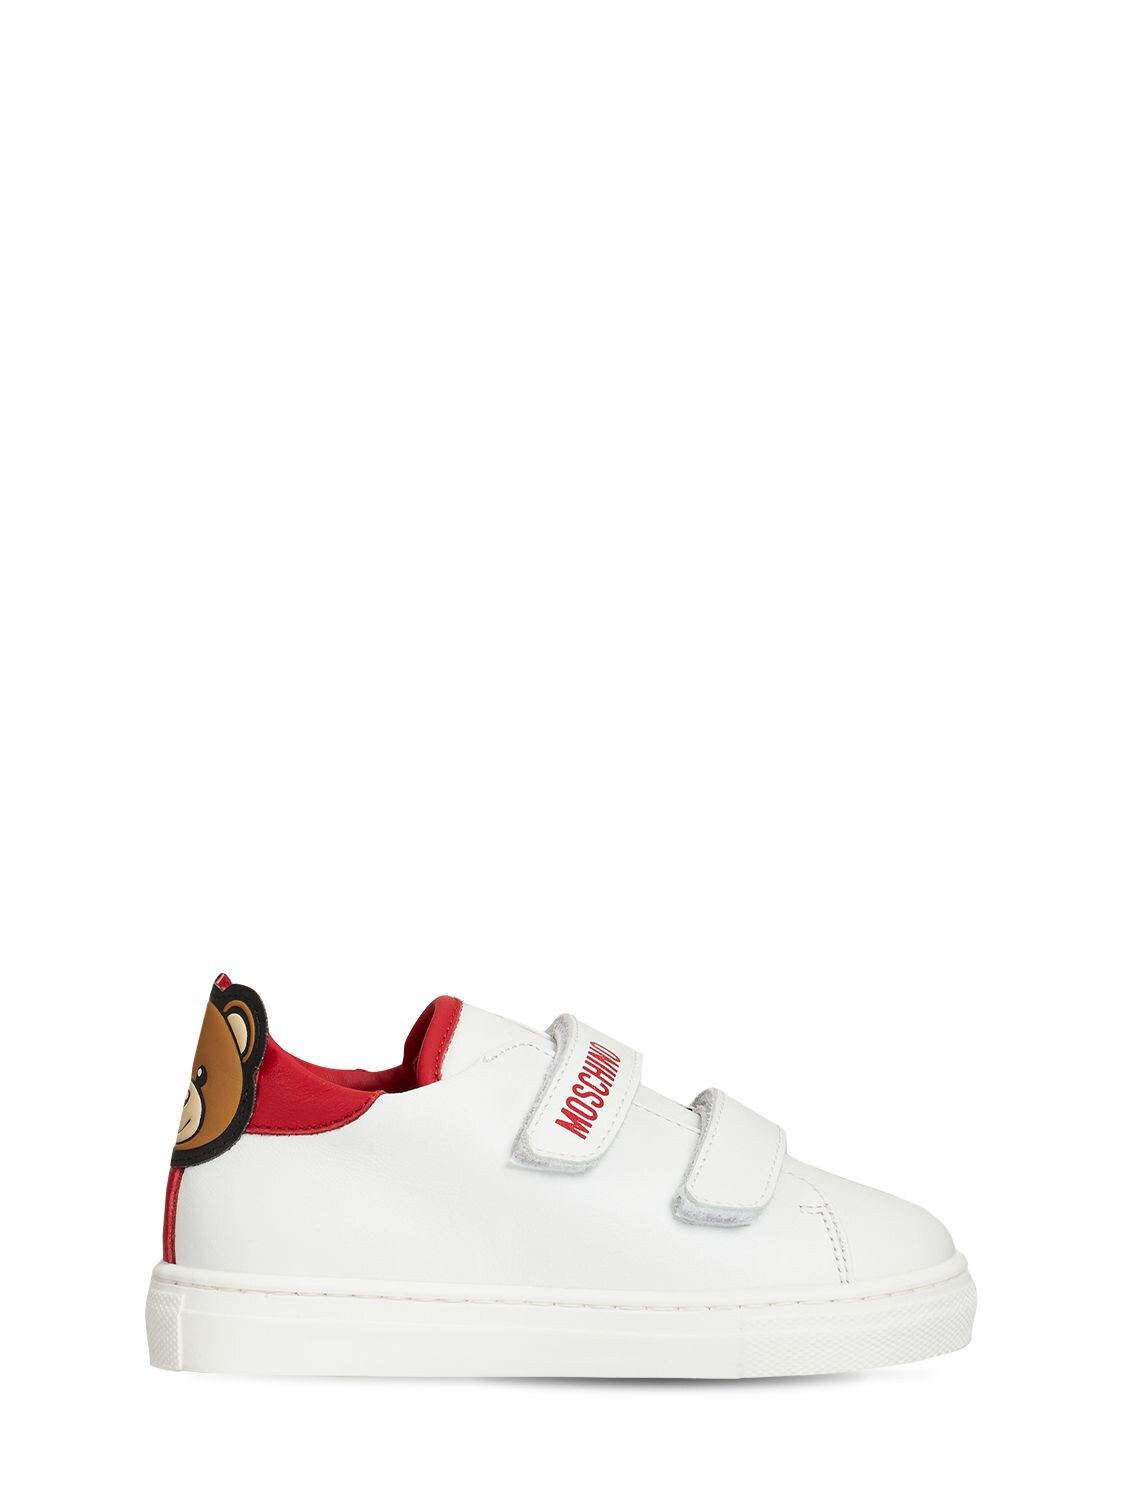 Moschino Kids' 泰迪熊魔术贴皮革运动鞋 In White,red